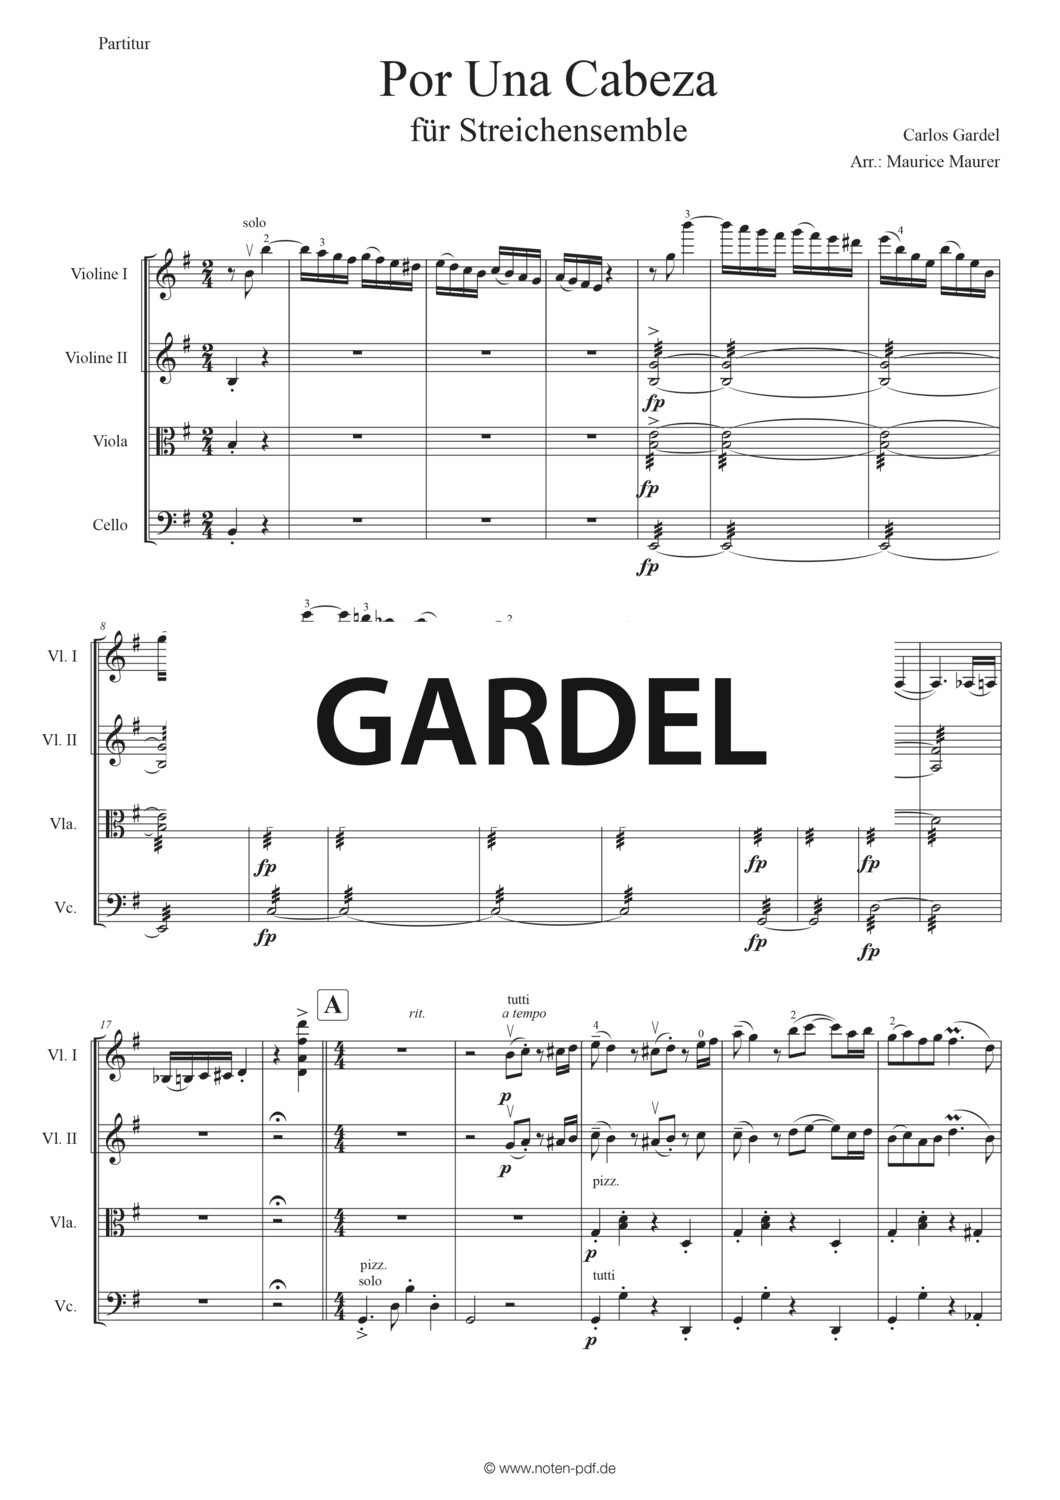 Gardel: Por Una Cabeza for String-Ensemble